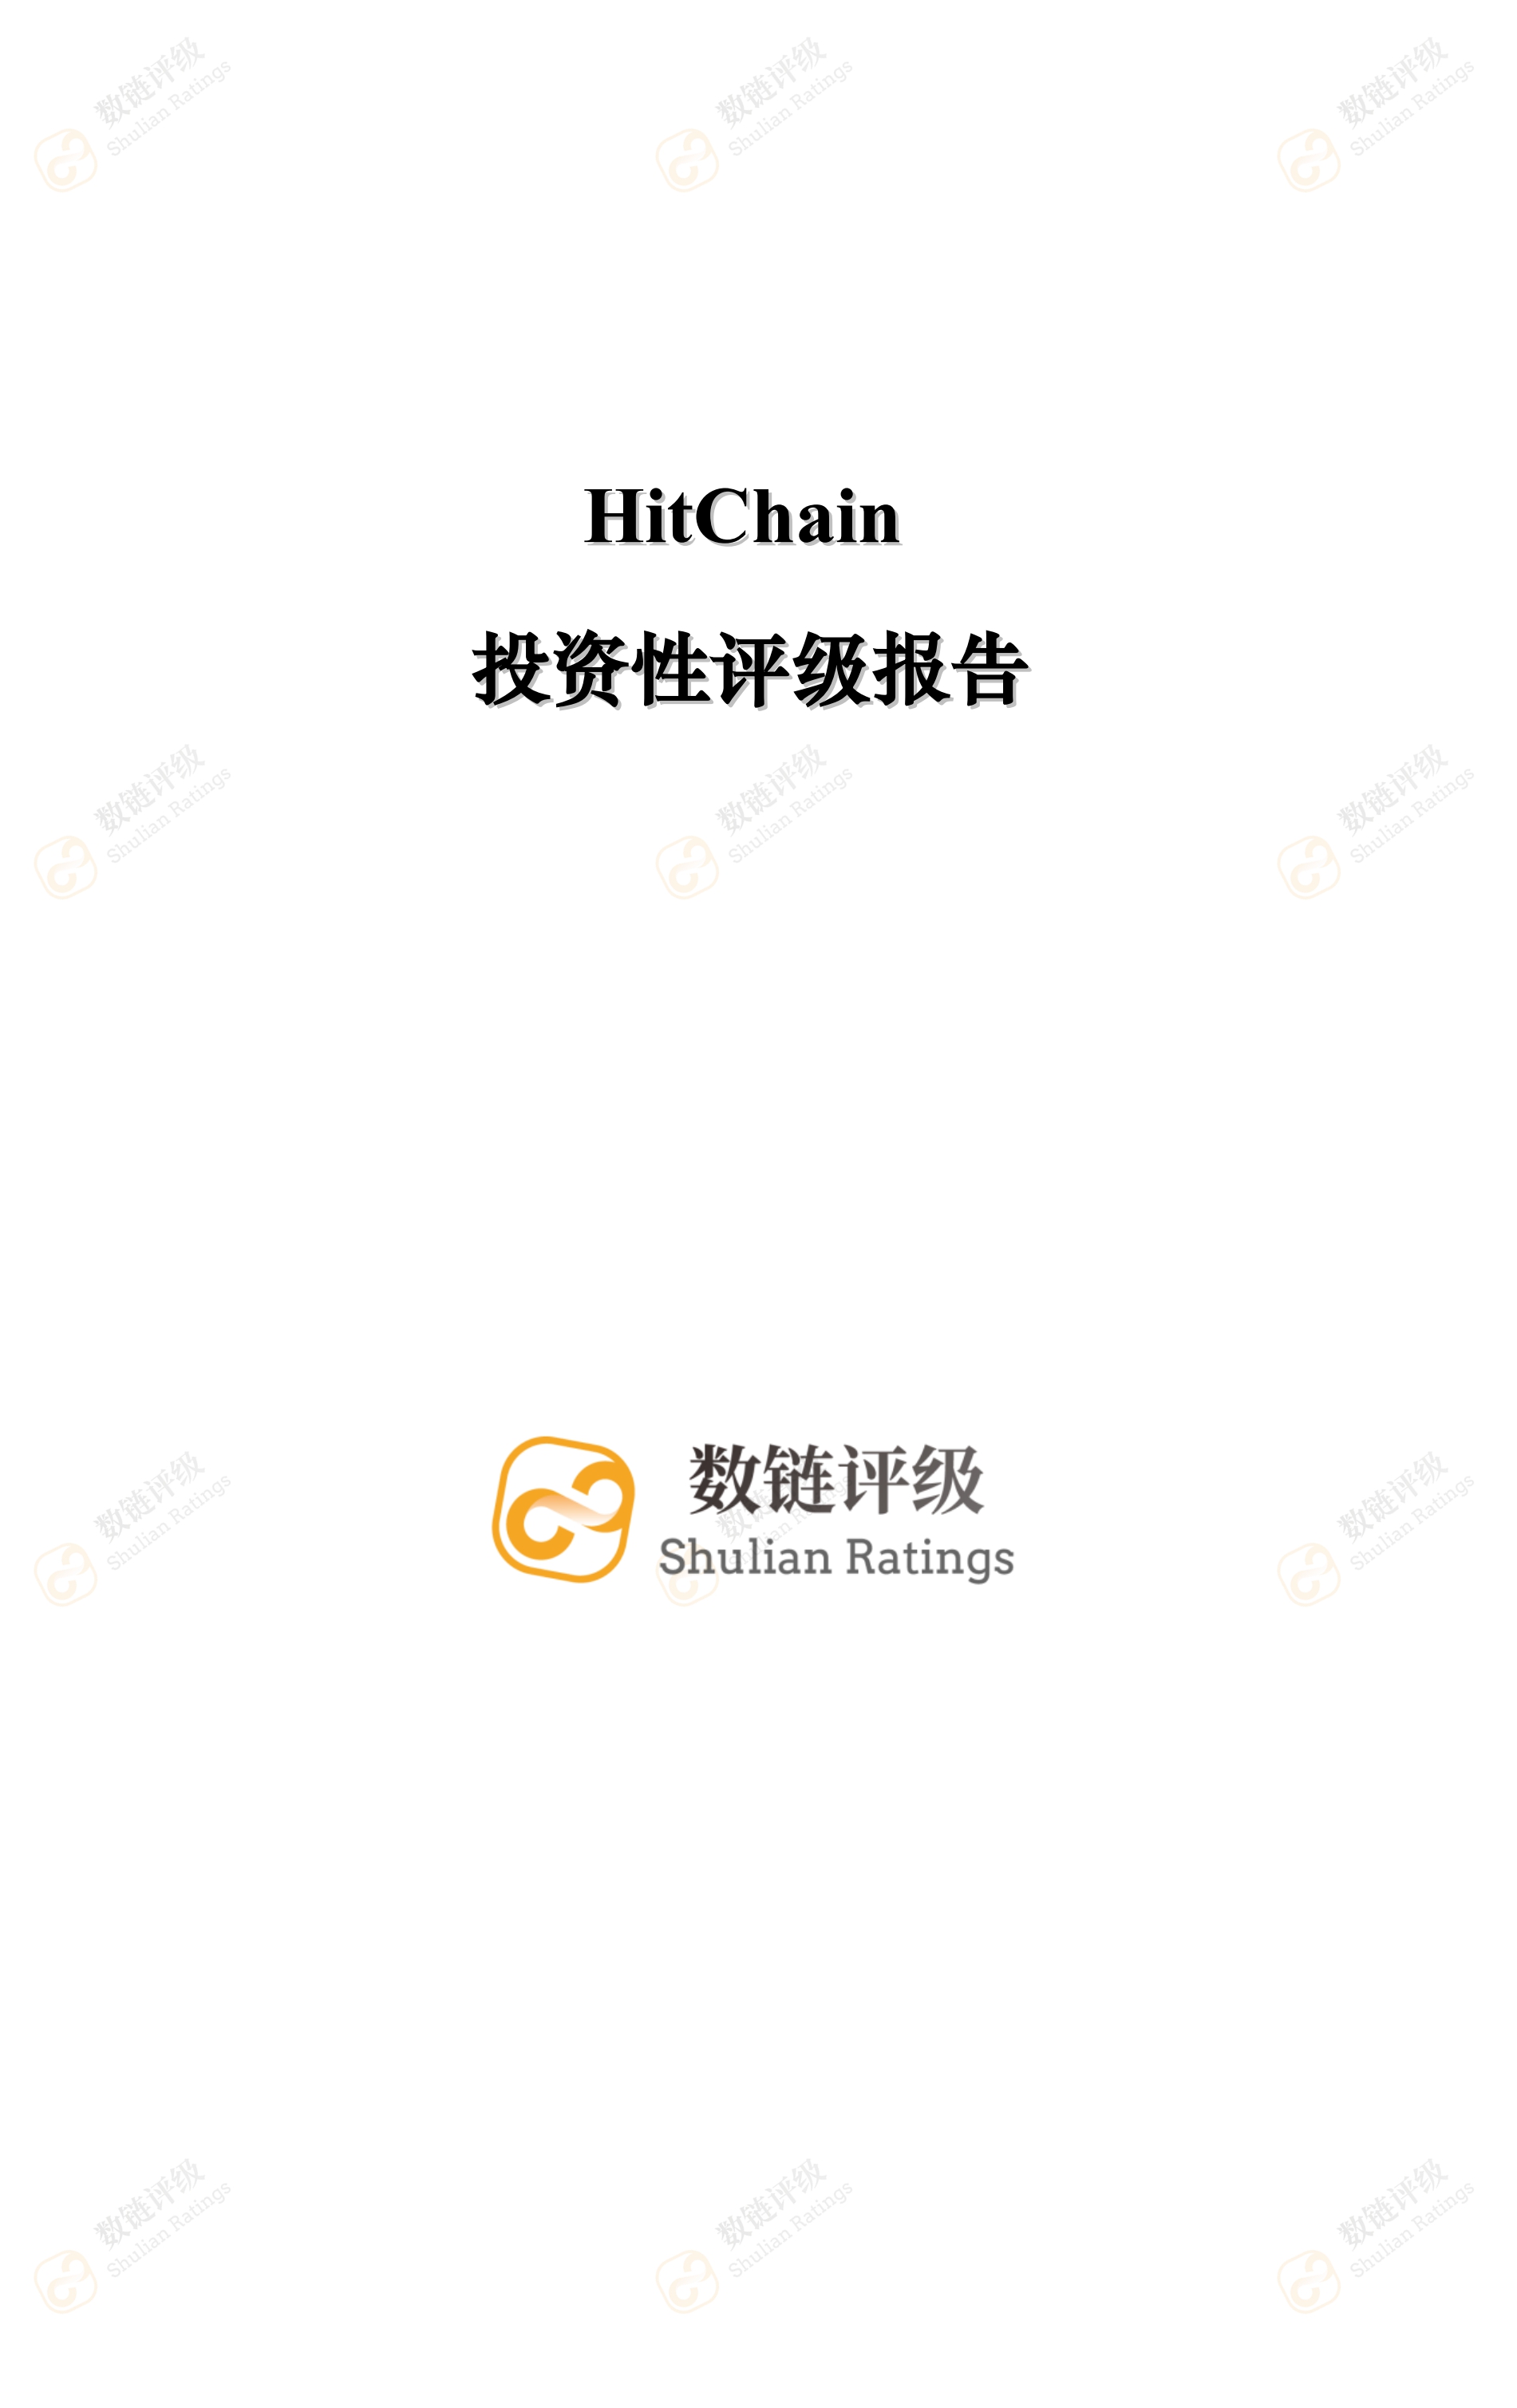 数链评级 | HitChain——知名资本拥趸，对标GitHub竞争压力较大配图(1)